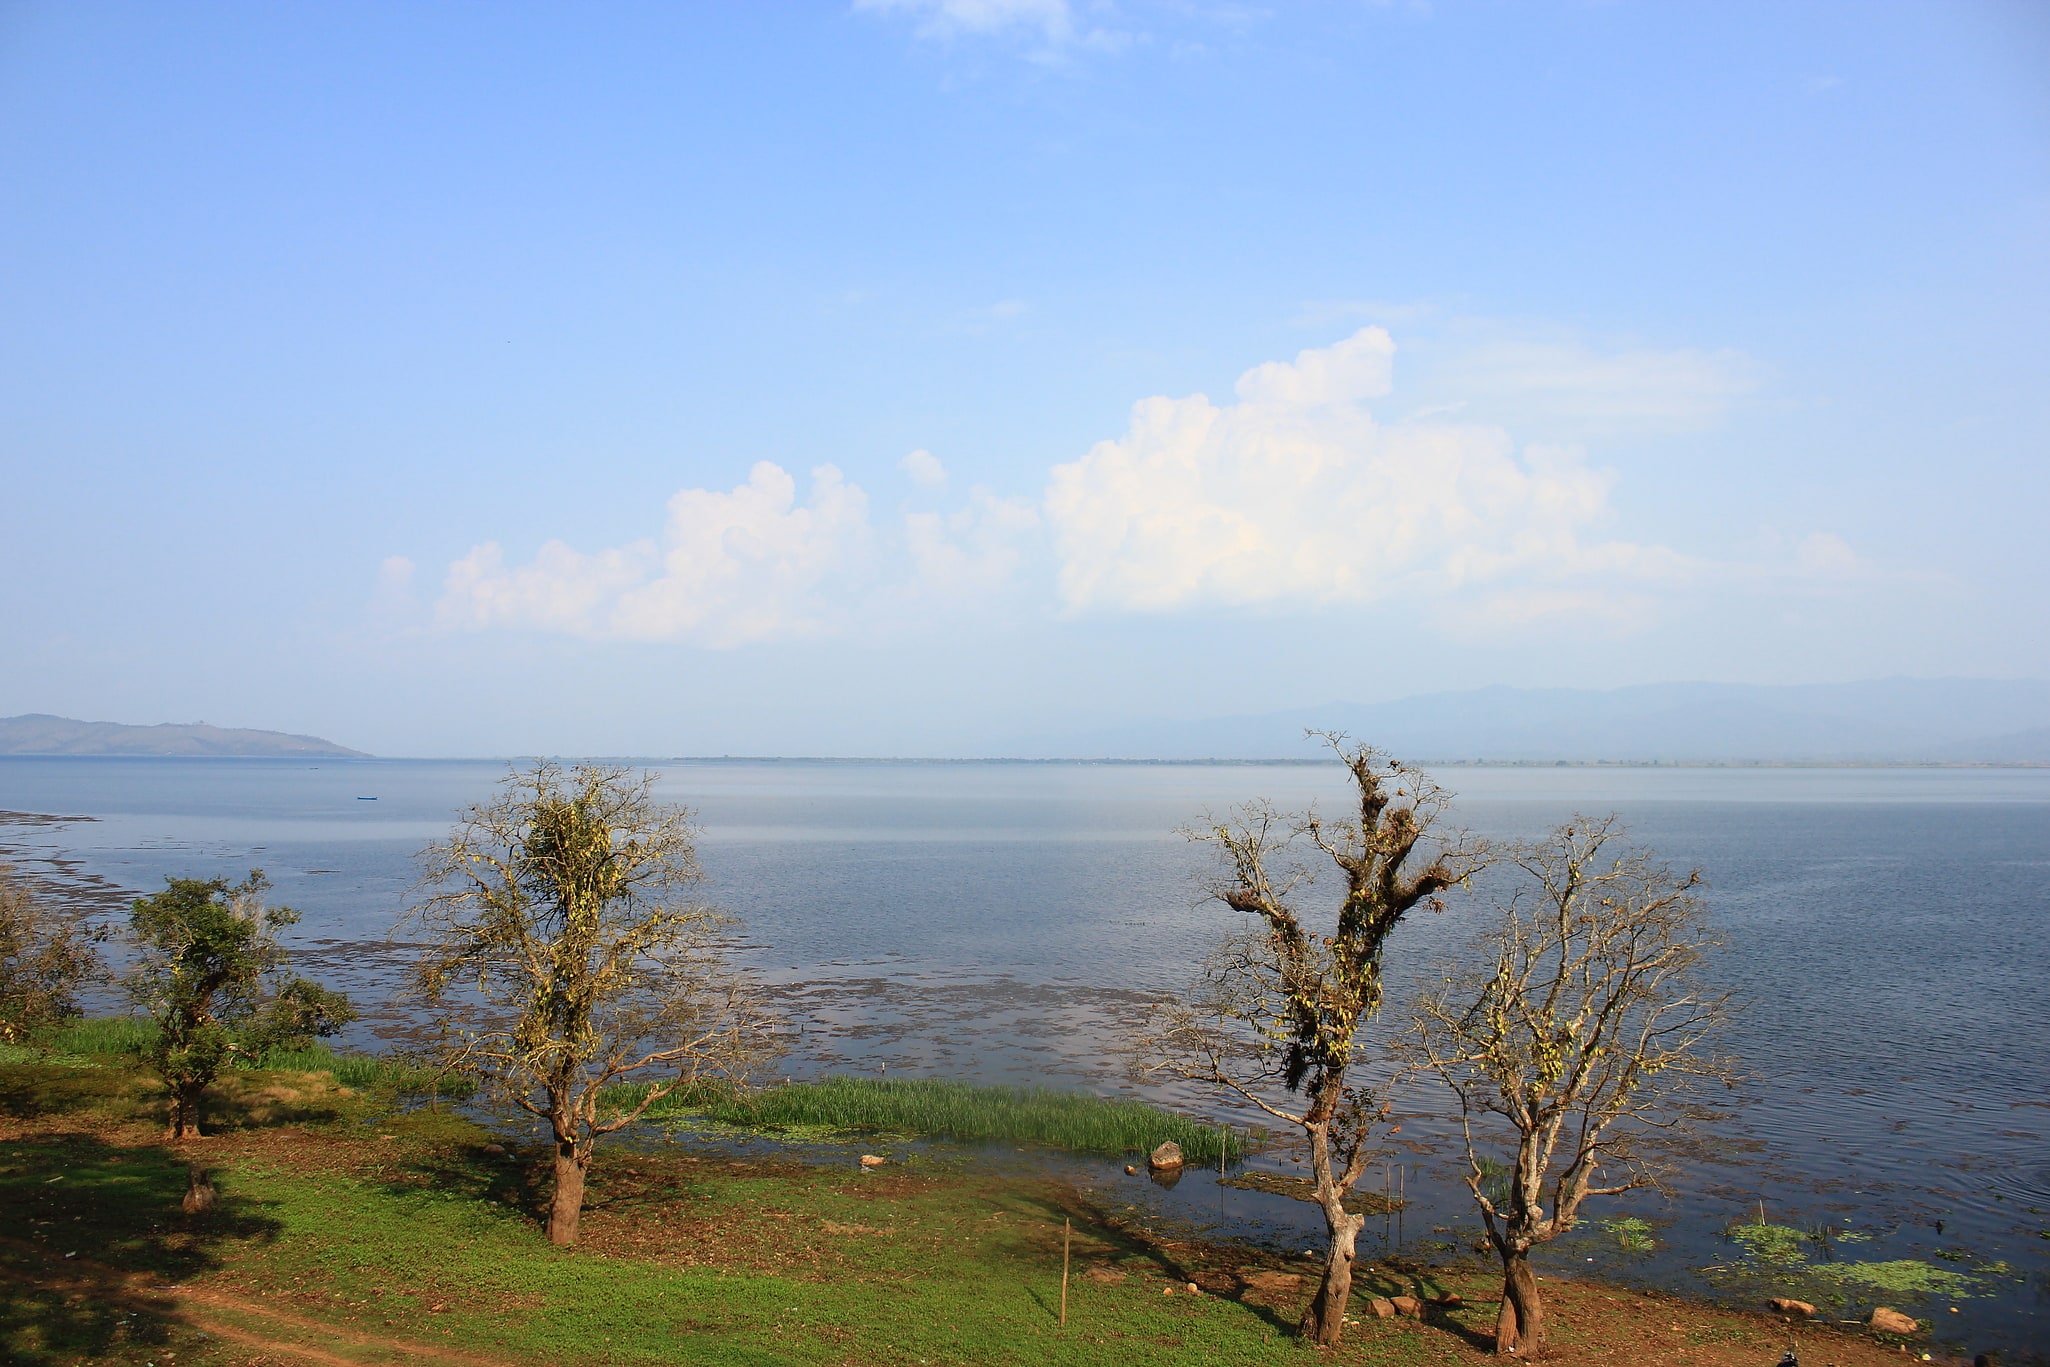 Indawgyi Lake Wildlife Sanctuary, Myanmar (Burma)